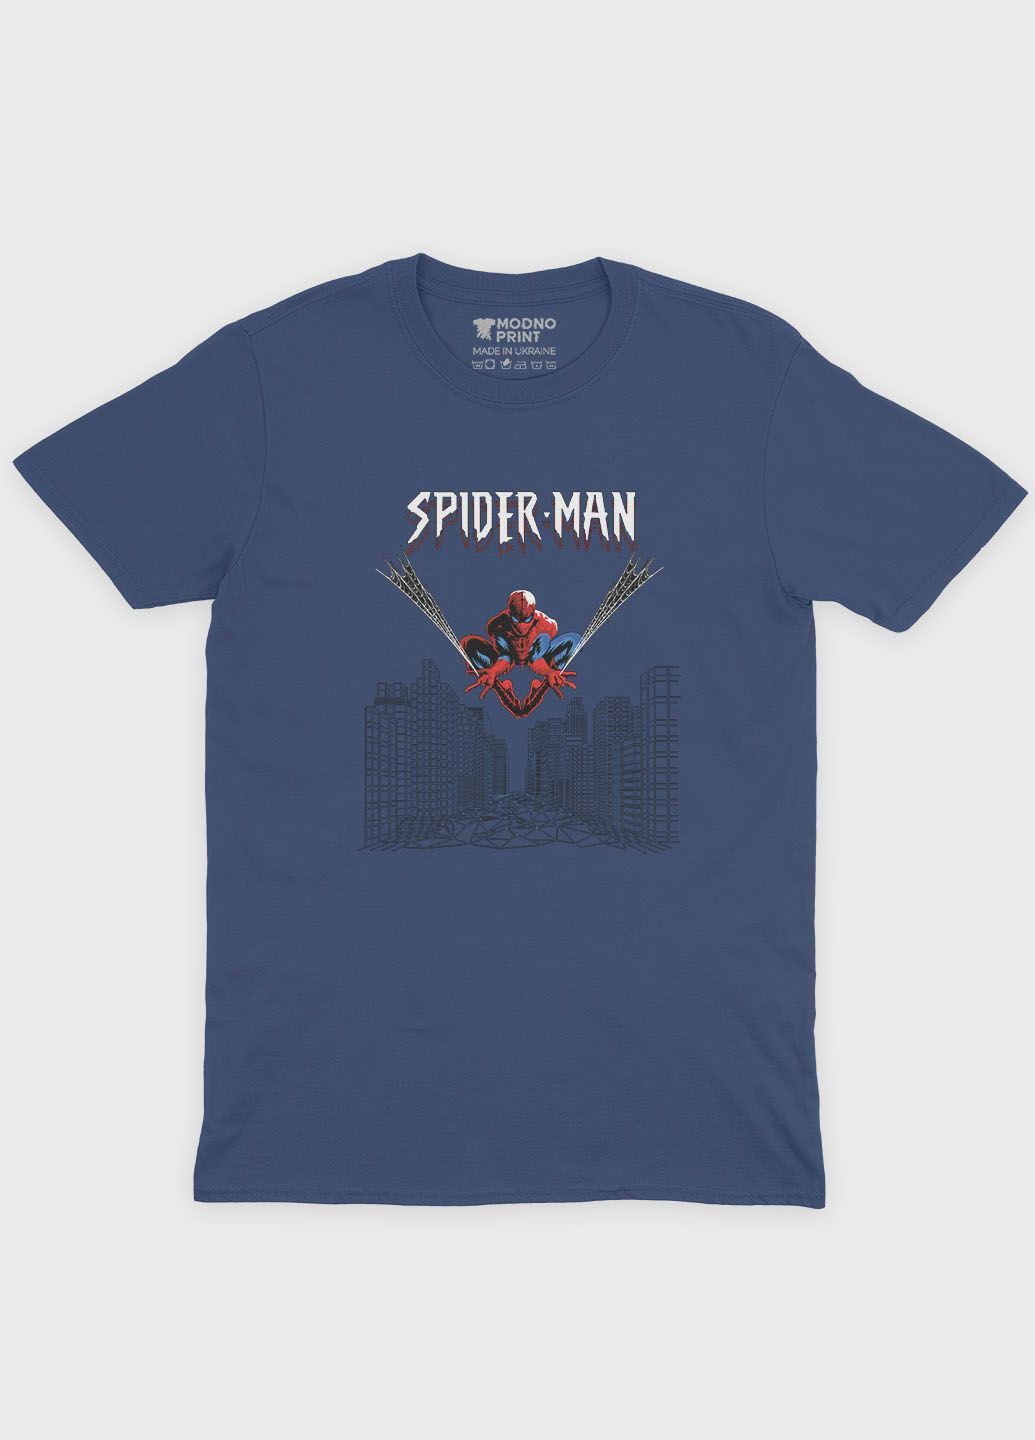 Темно-синяя демисезонная футболка для девочки с принтом супергероя - человек-паук (ts001-1-nav-006-014-038-g) Modno